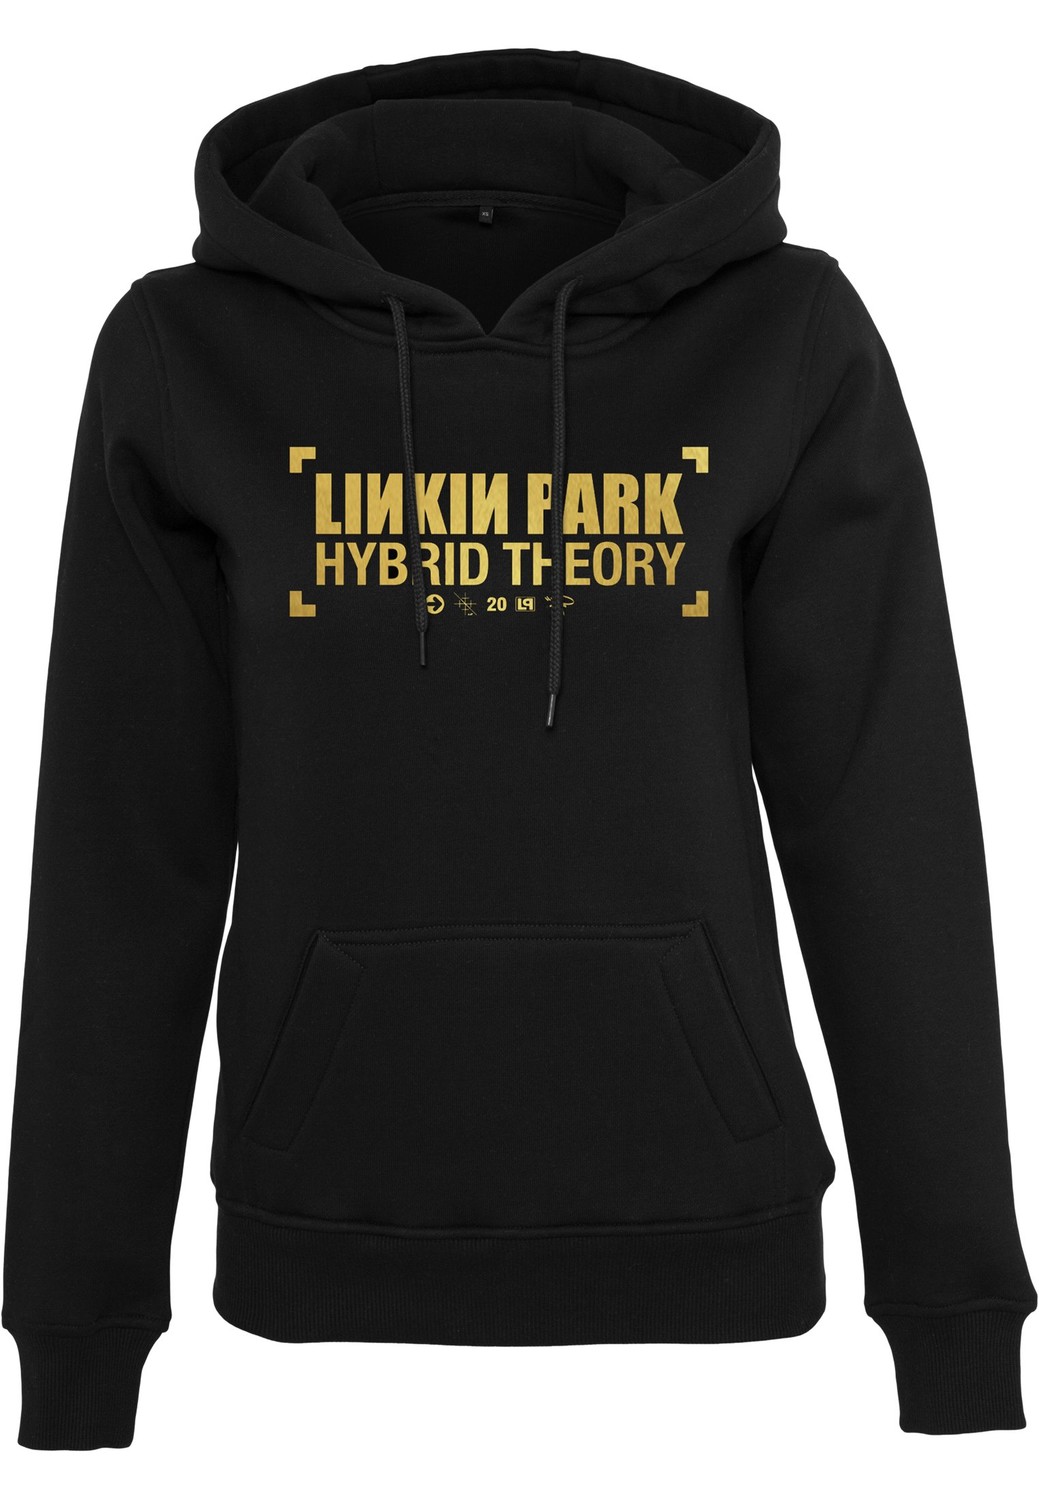 Dámské logo Linkin Park Anniversay Hoody černé